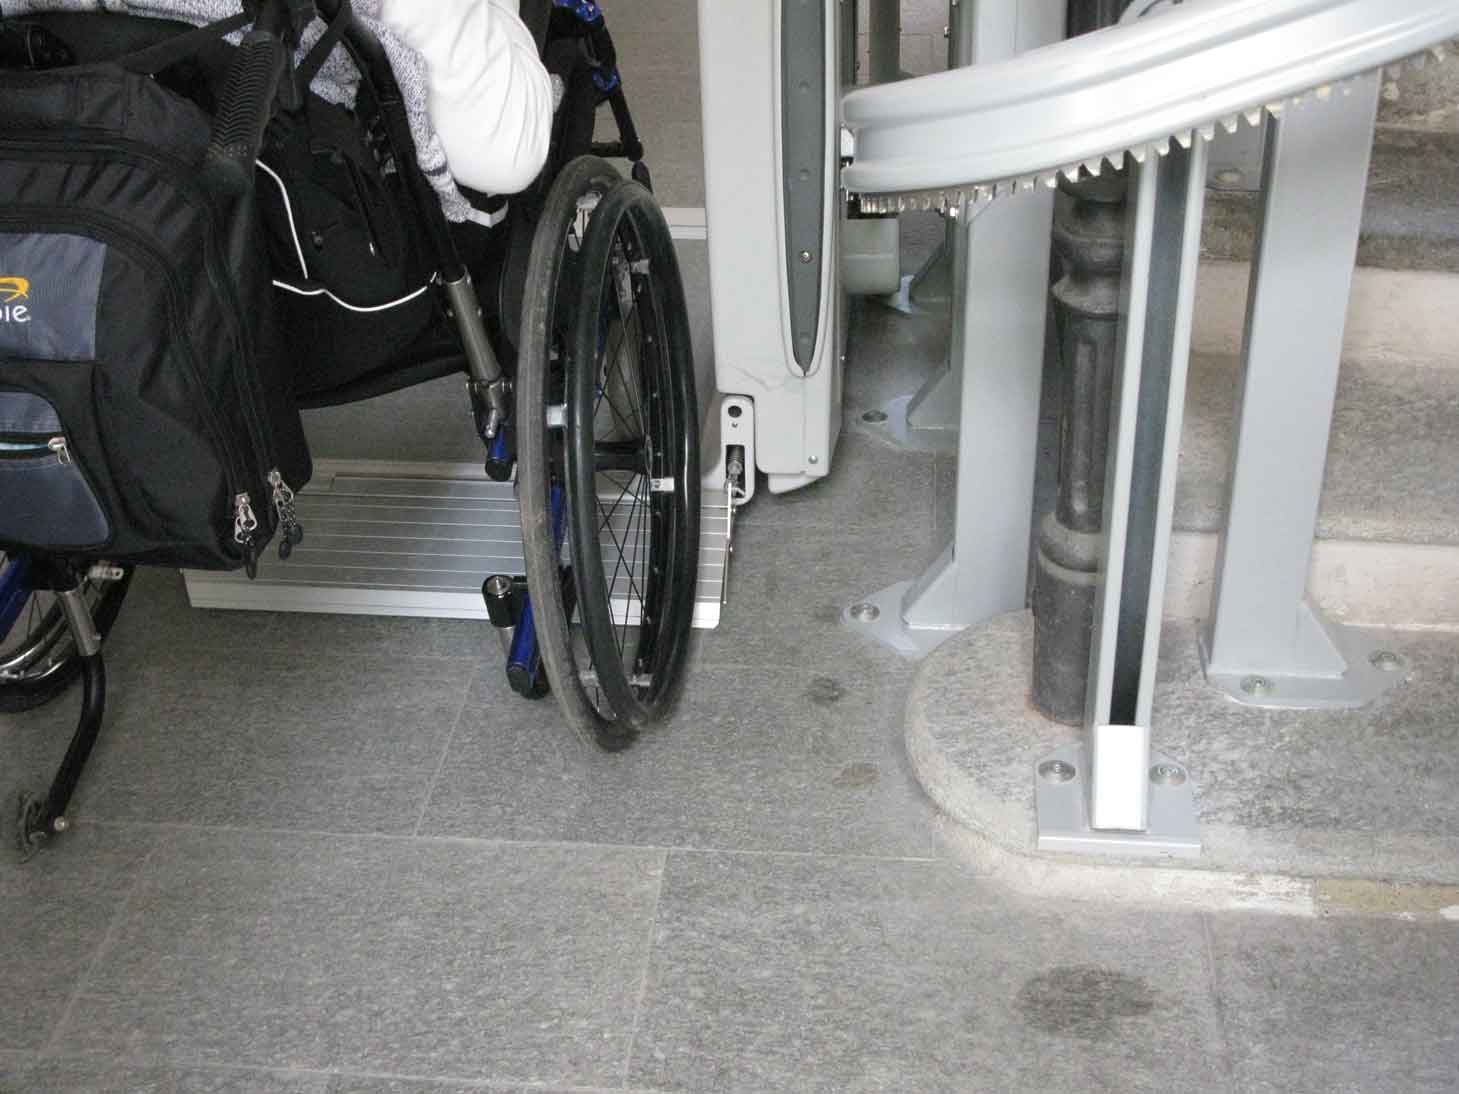 Accessibilità, oltre un milione di euro agli enti pubblici per riqua...